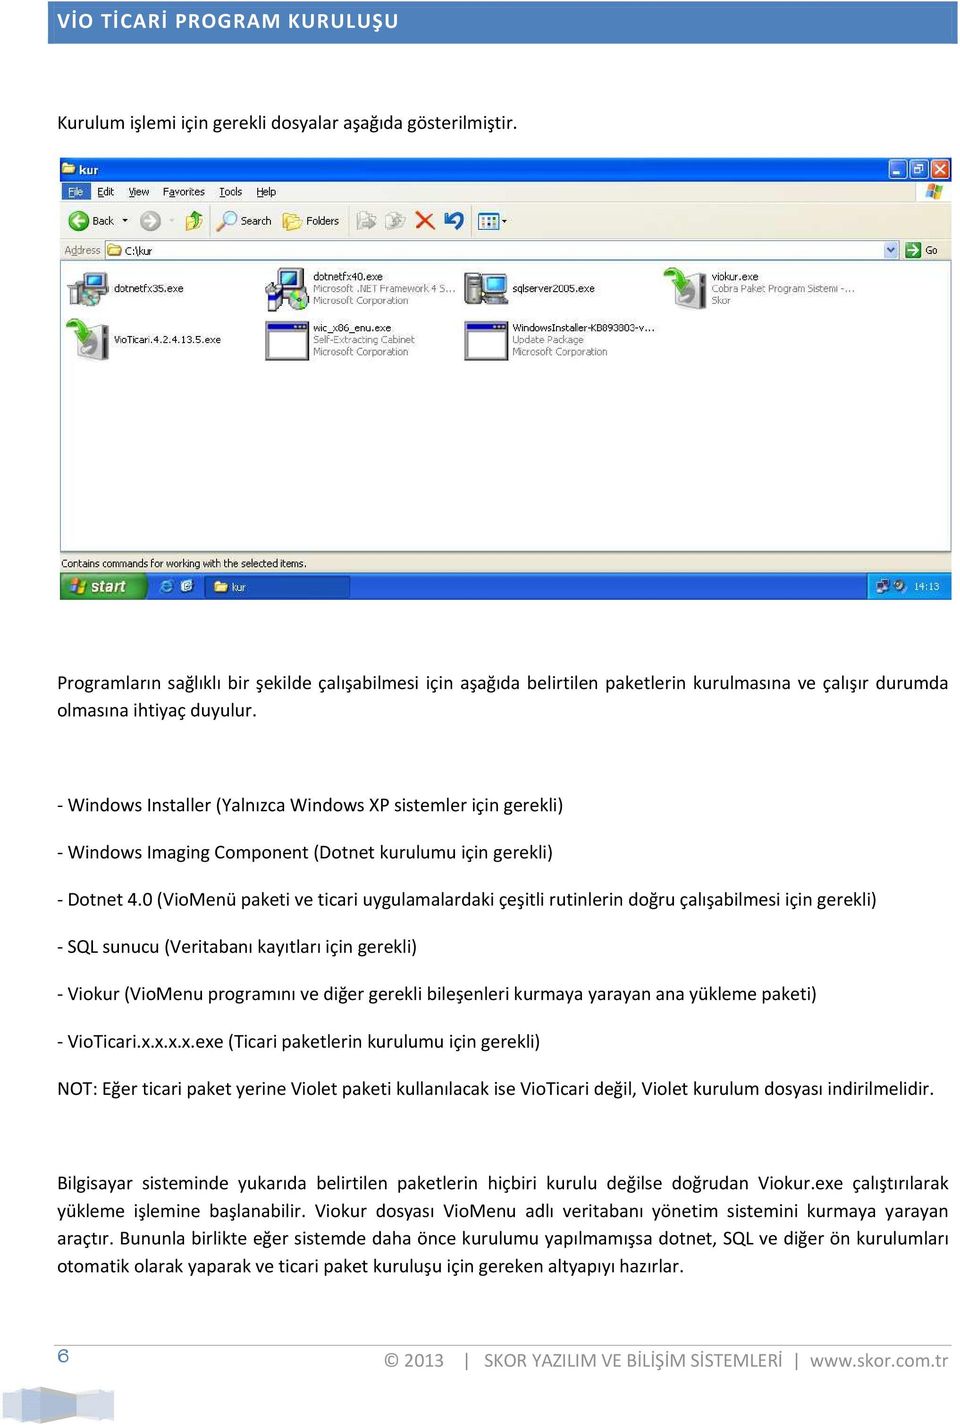 - Windows Installer (Yalnızca Windows XP sistemler için gerekli) - Windows Imaging Component (Dotnet kurulumu için gerekli) - Dotnet 4.